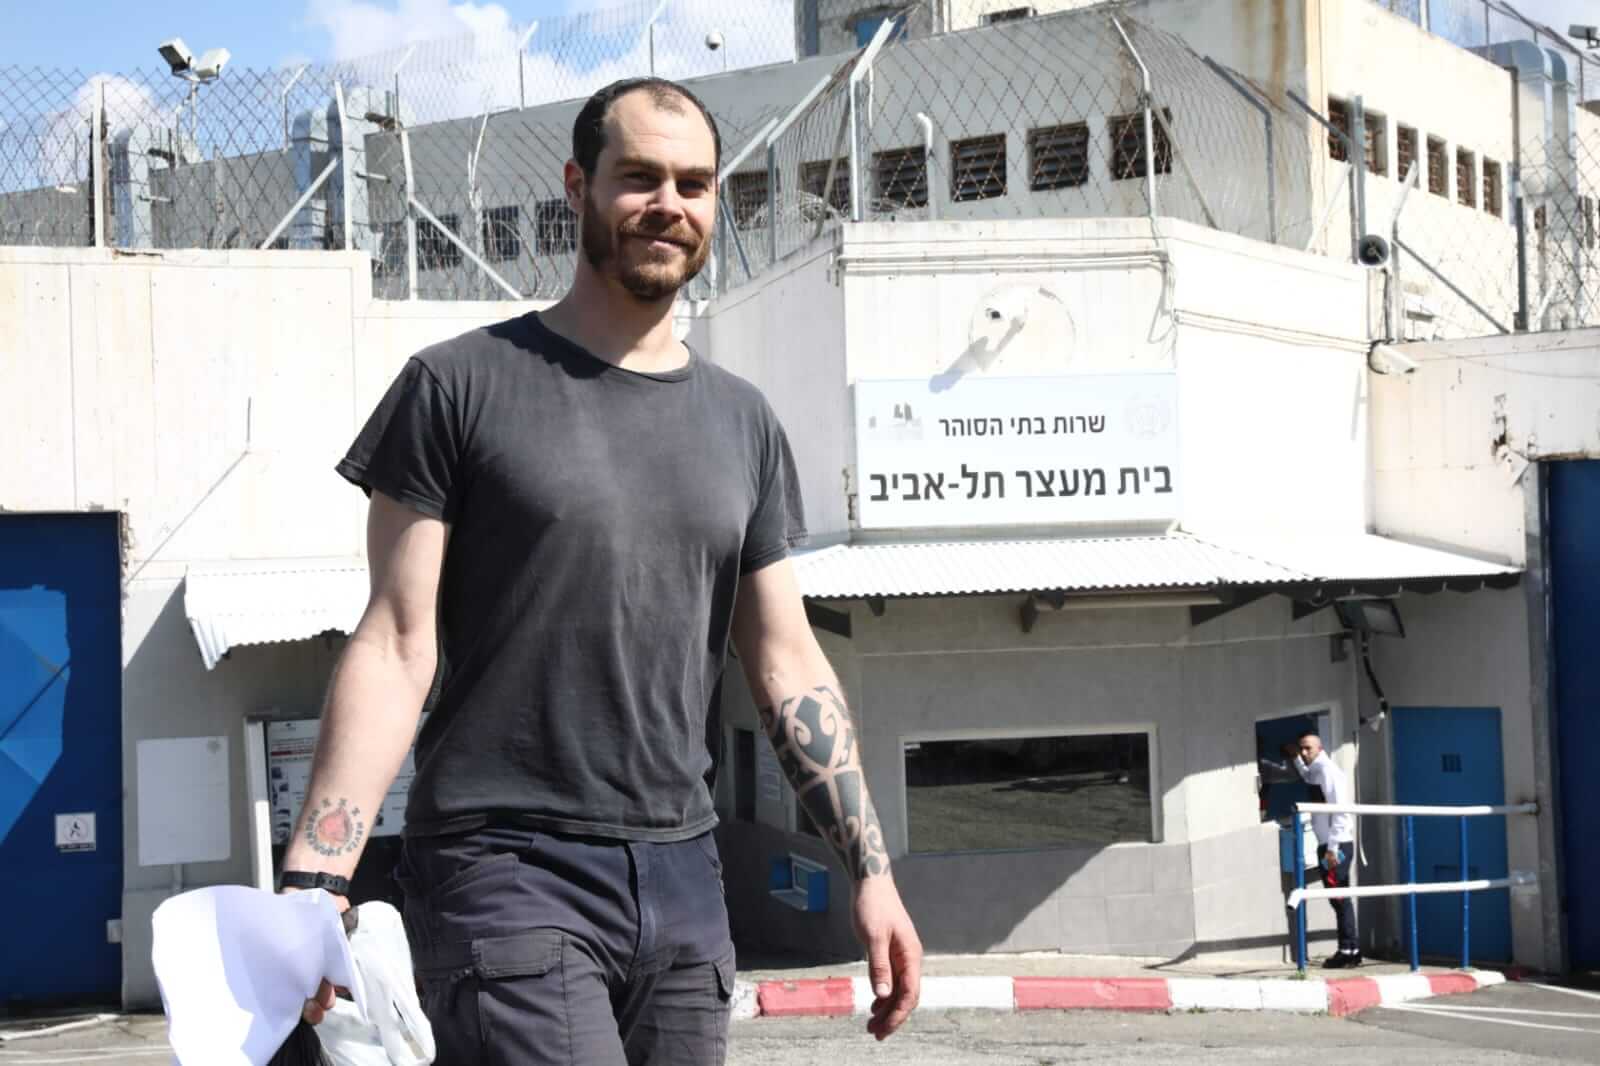 Jonathan Pollak leaving prison on February 20, 2020. (Photo: Oren Ziv / Activestills)